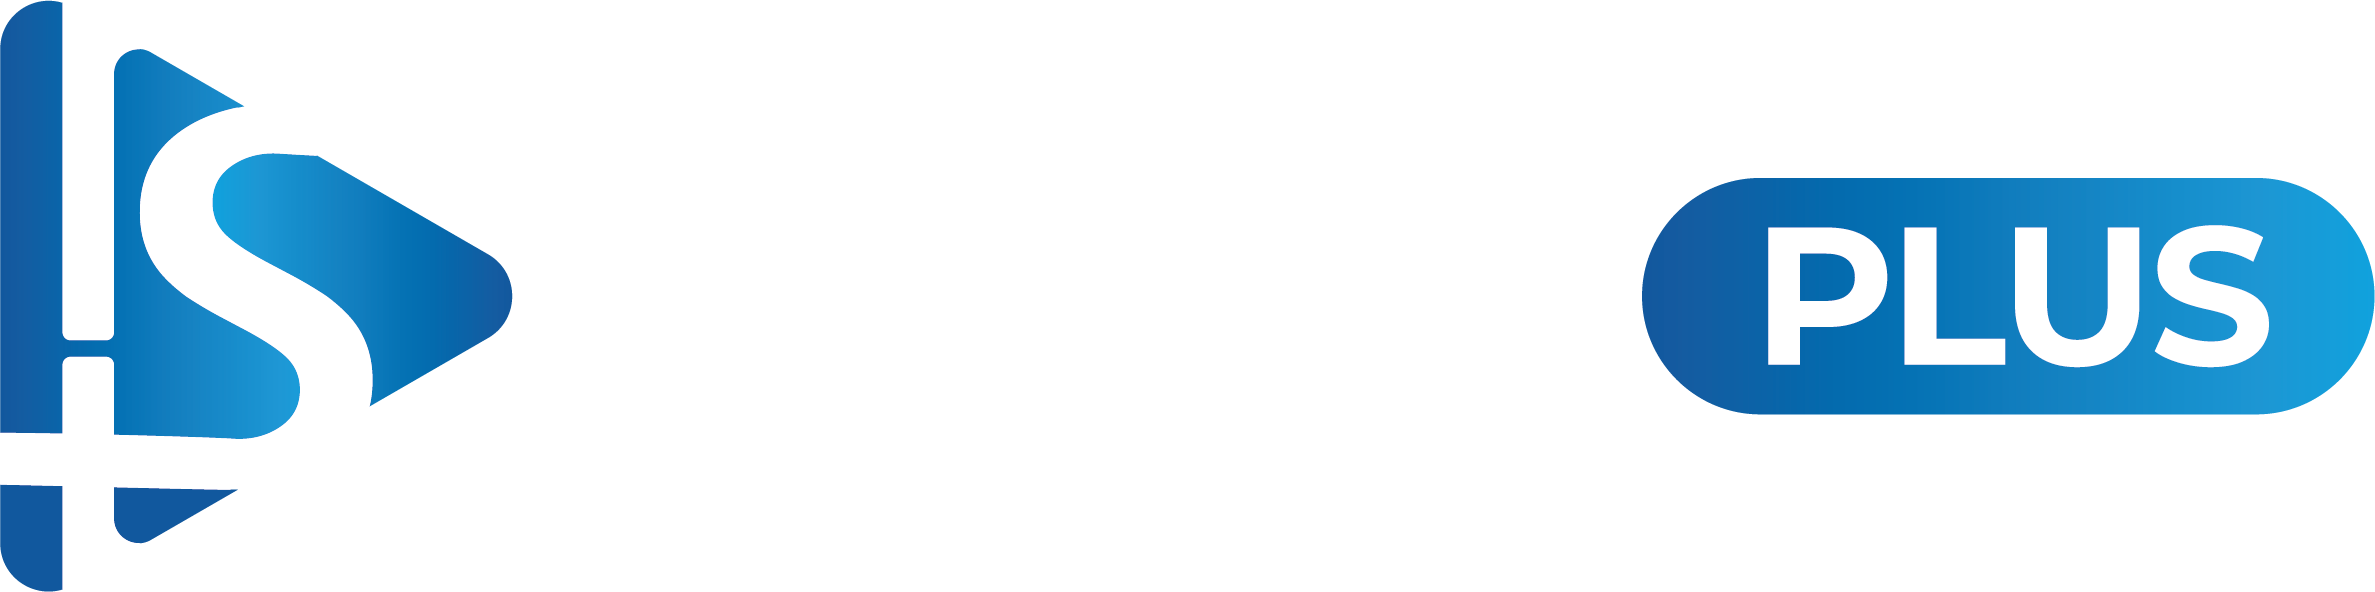 Shilo Plus - Plateforme de Streaming Chrétienne